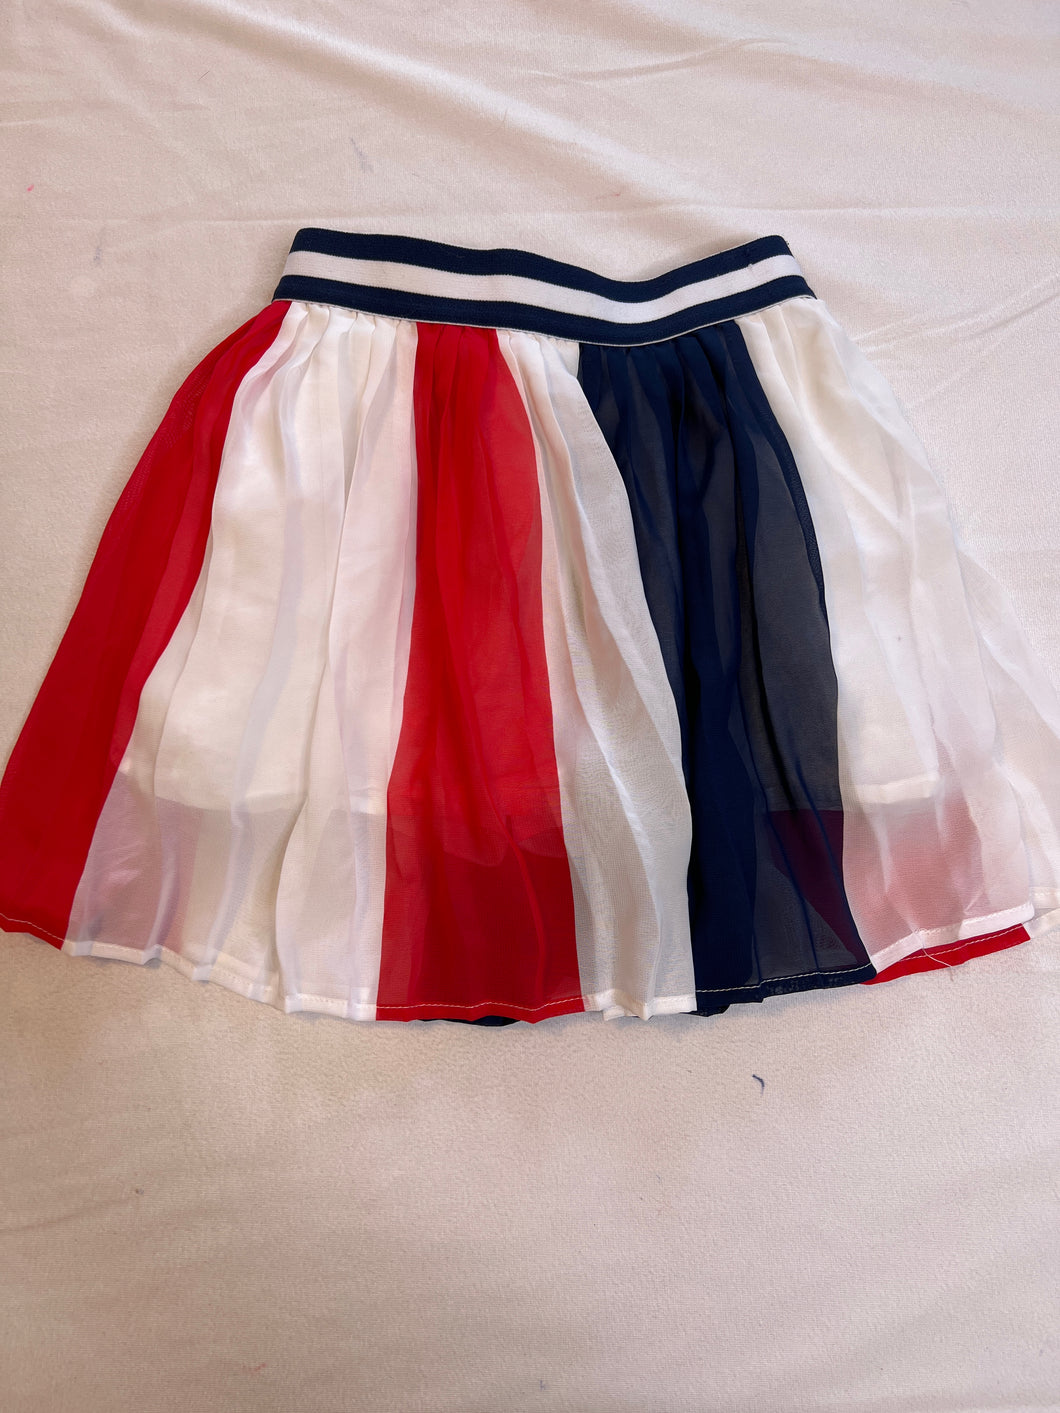 Girls 6/6x Disney Skirt